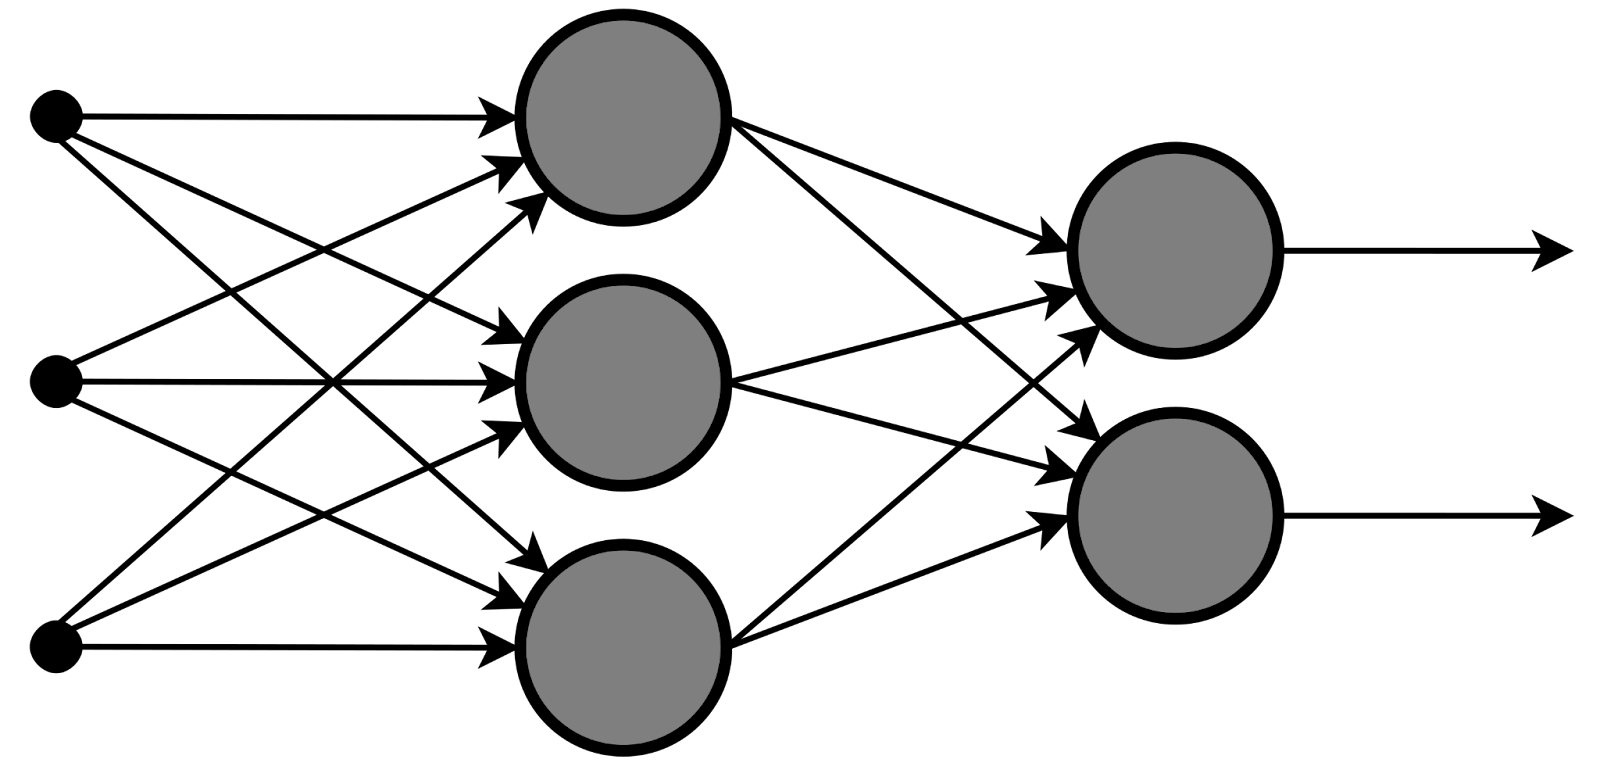 Многослойный перцептрон с 3 входами, 3 скрытыми нейронами и 2 выходными нейронами. Источник: википедия (https://en.wikipedia.org/wiki/Multilayer_perceptron).